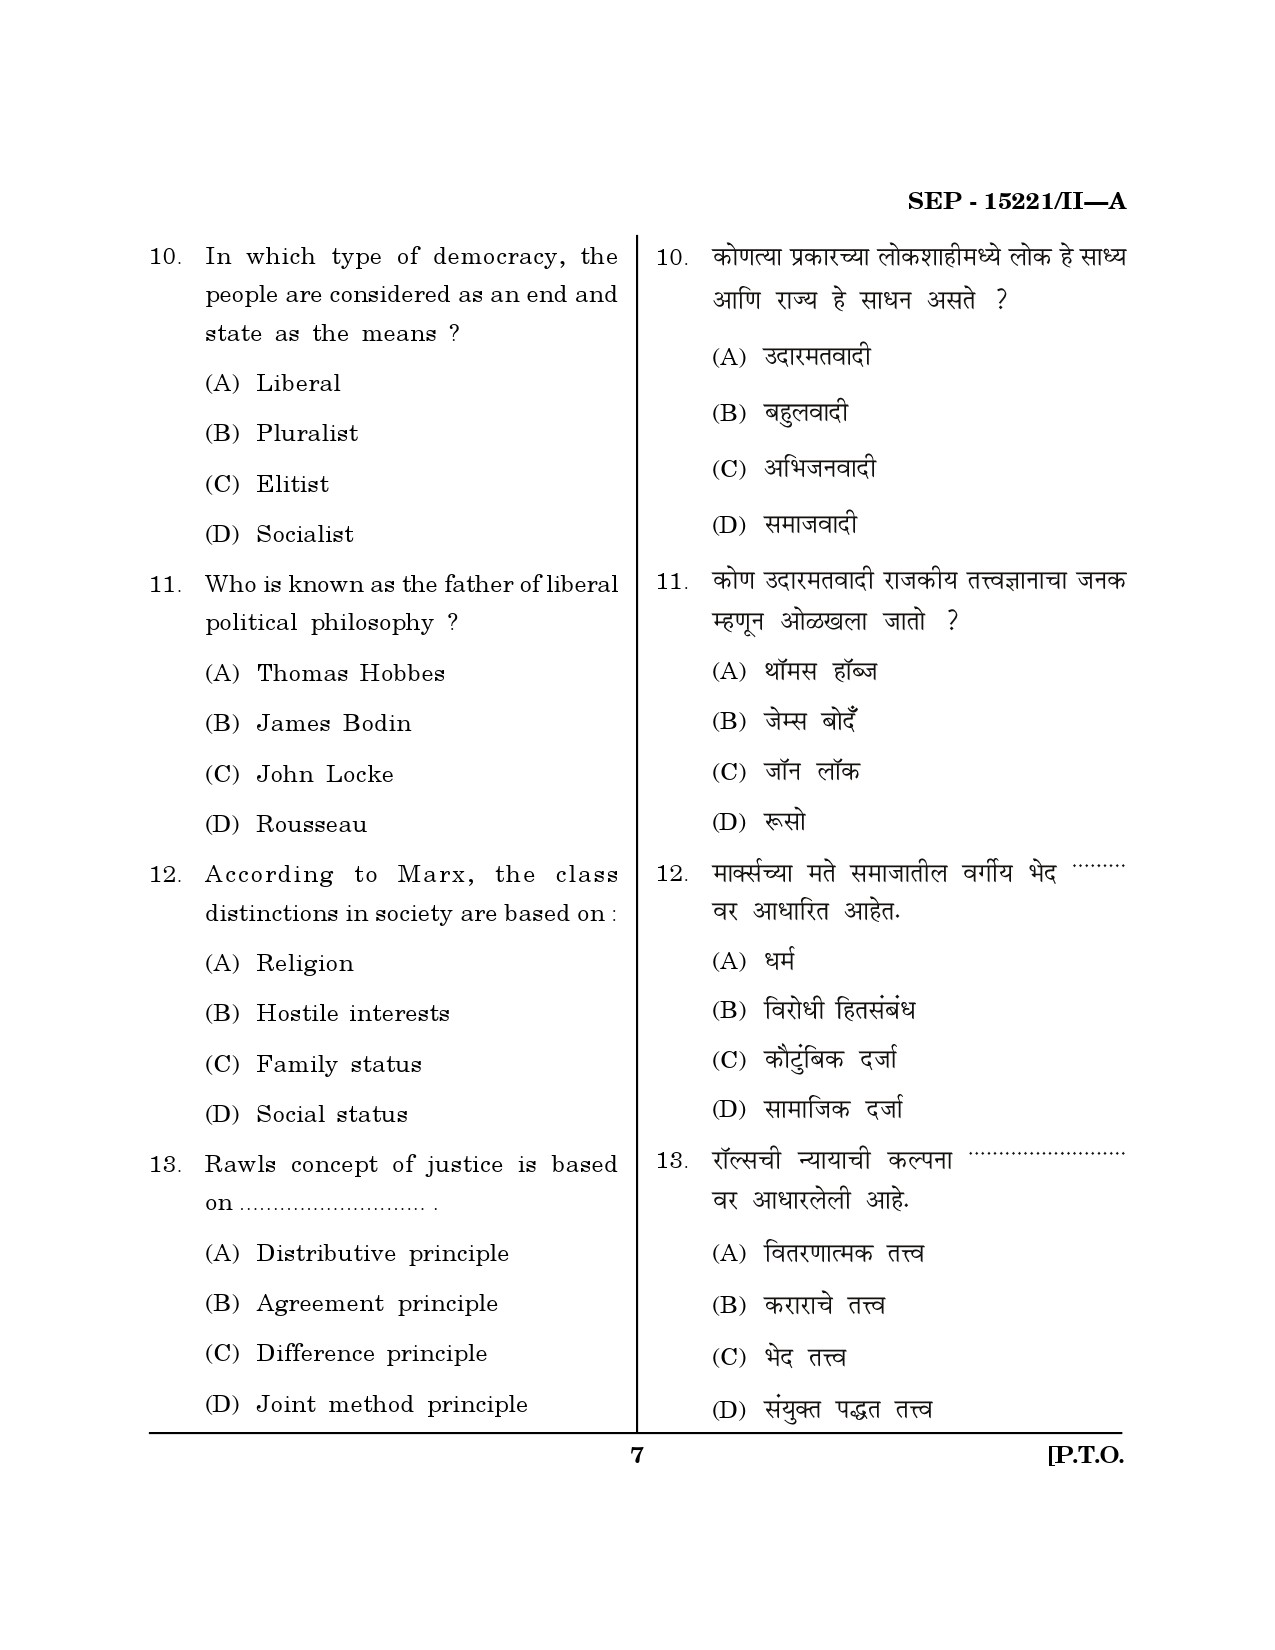 Maharashtra SET Political Science Exam Question Paper September 2021 6